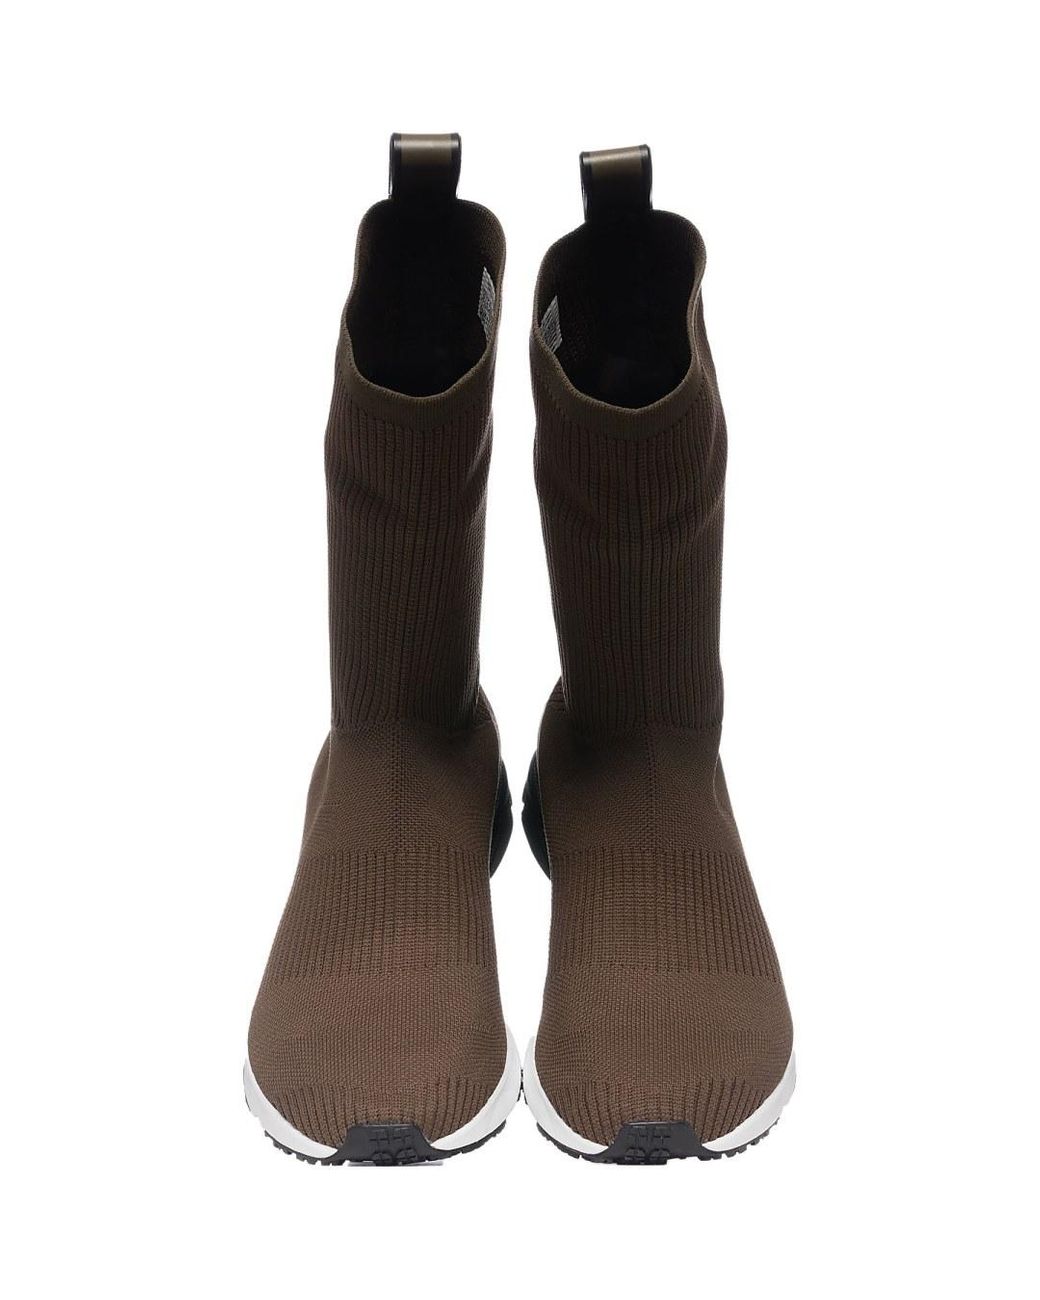 Reebok Sock Runner Ultraknit- Moss/black/white in Brown for Men - Save 13%  | Lyst